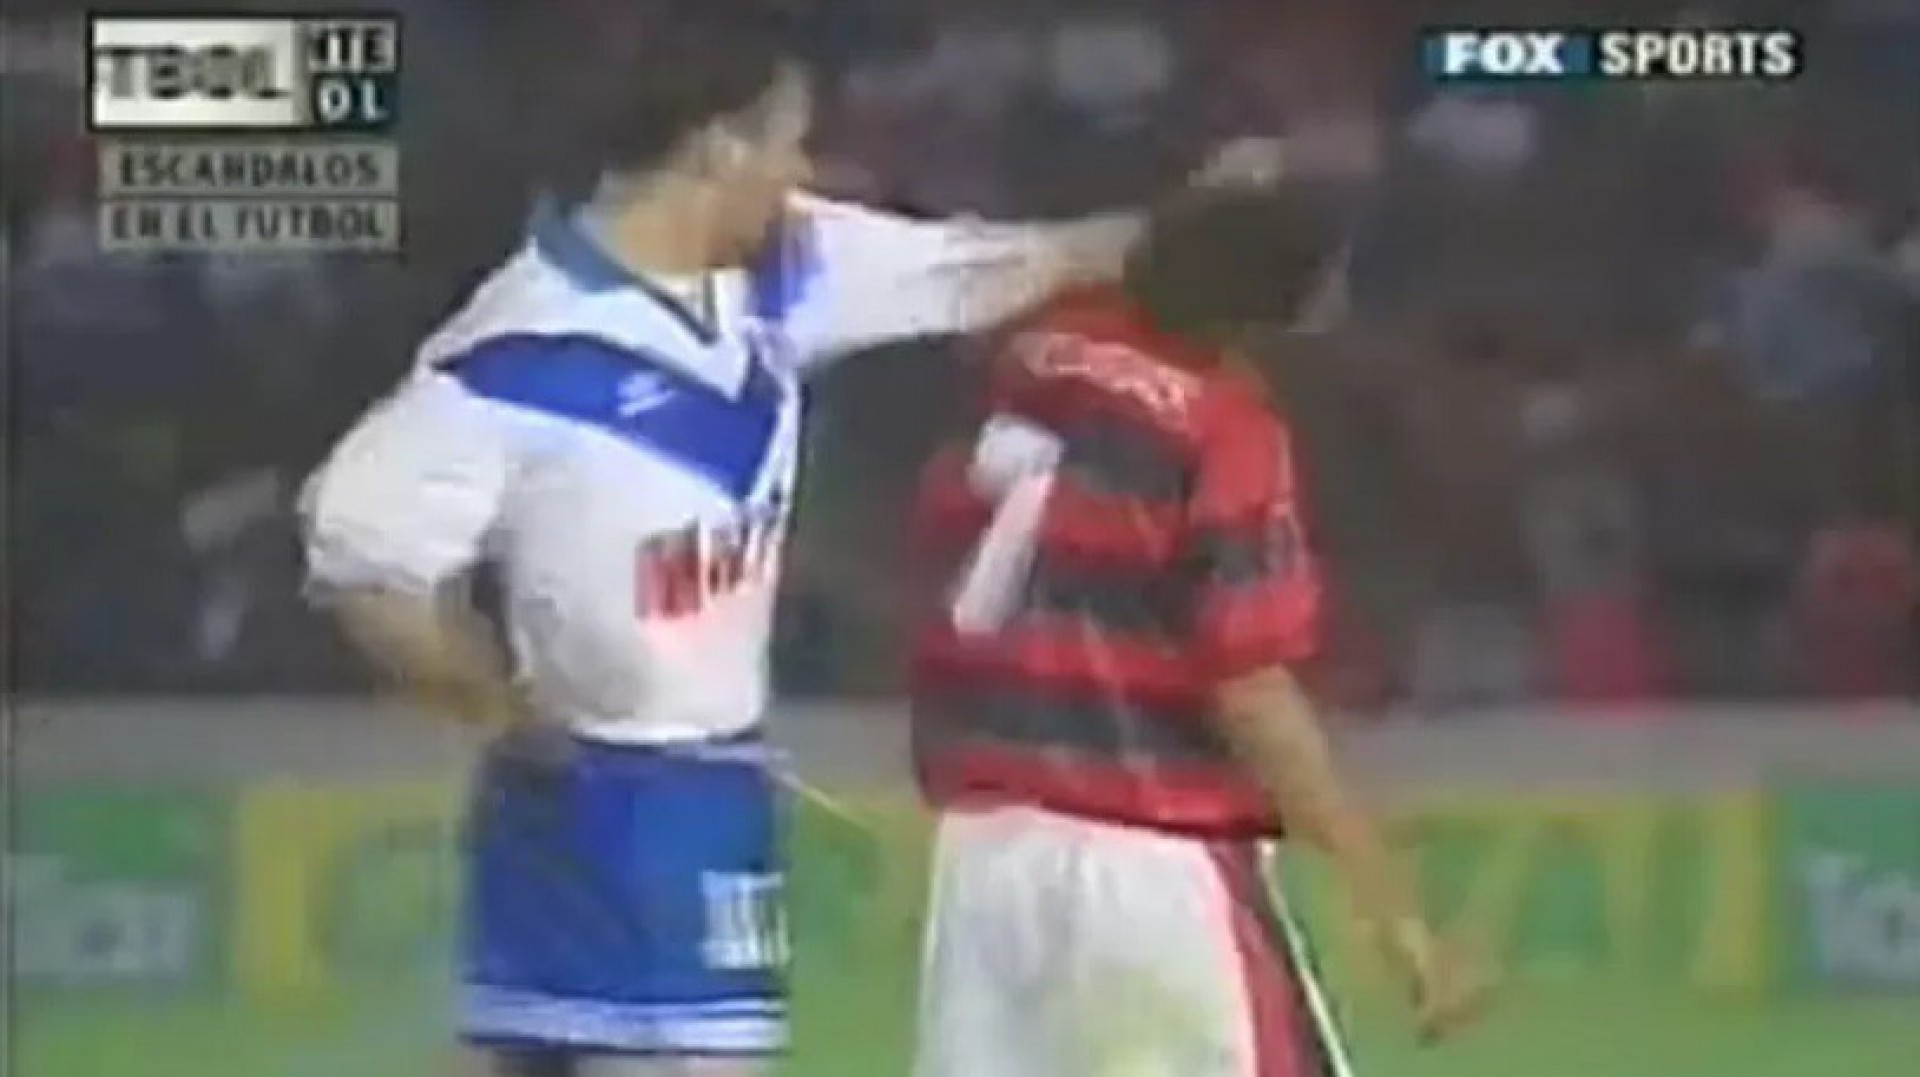 Edmundo levou soco durante Flamengo x Vélez em 1995 - Reprodução